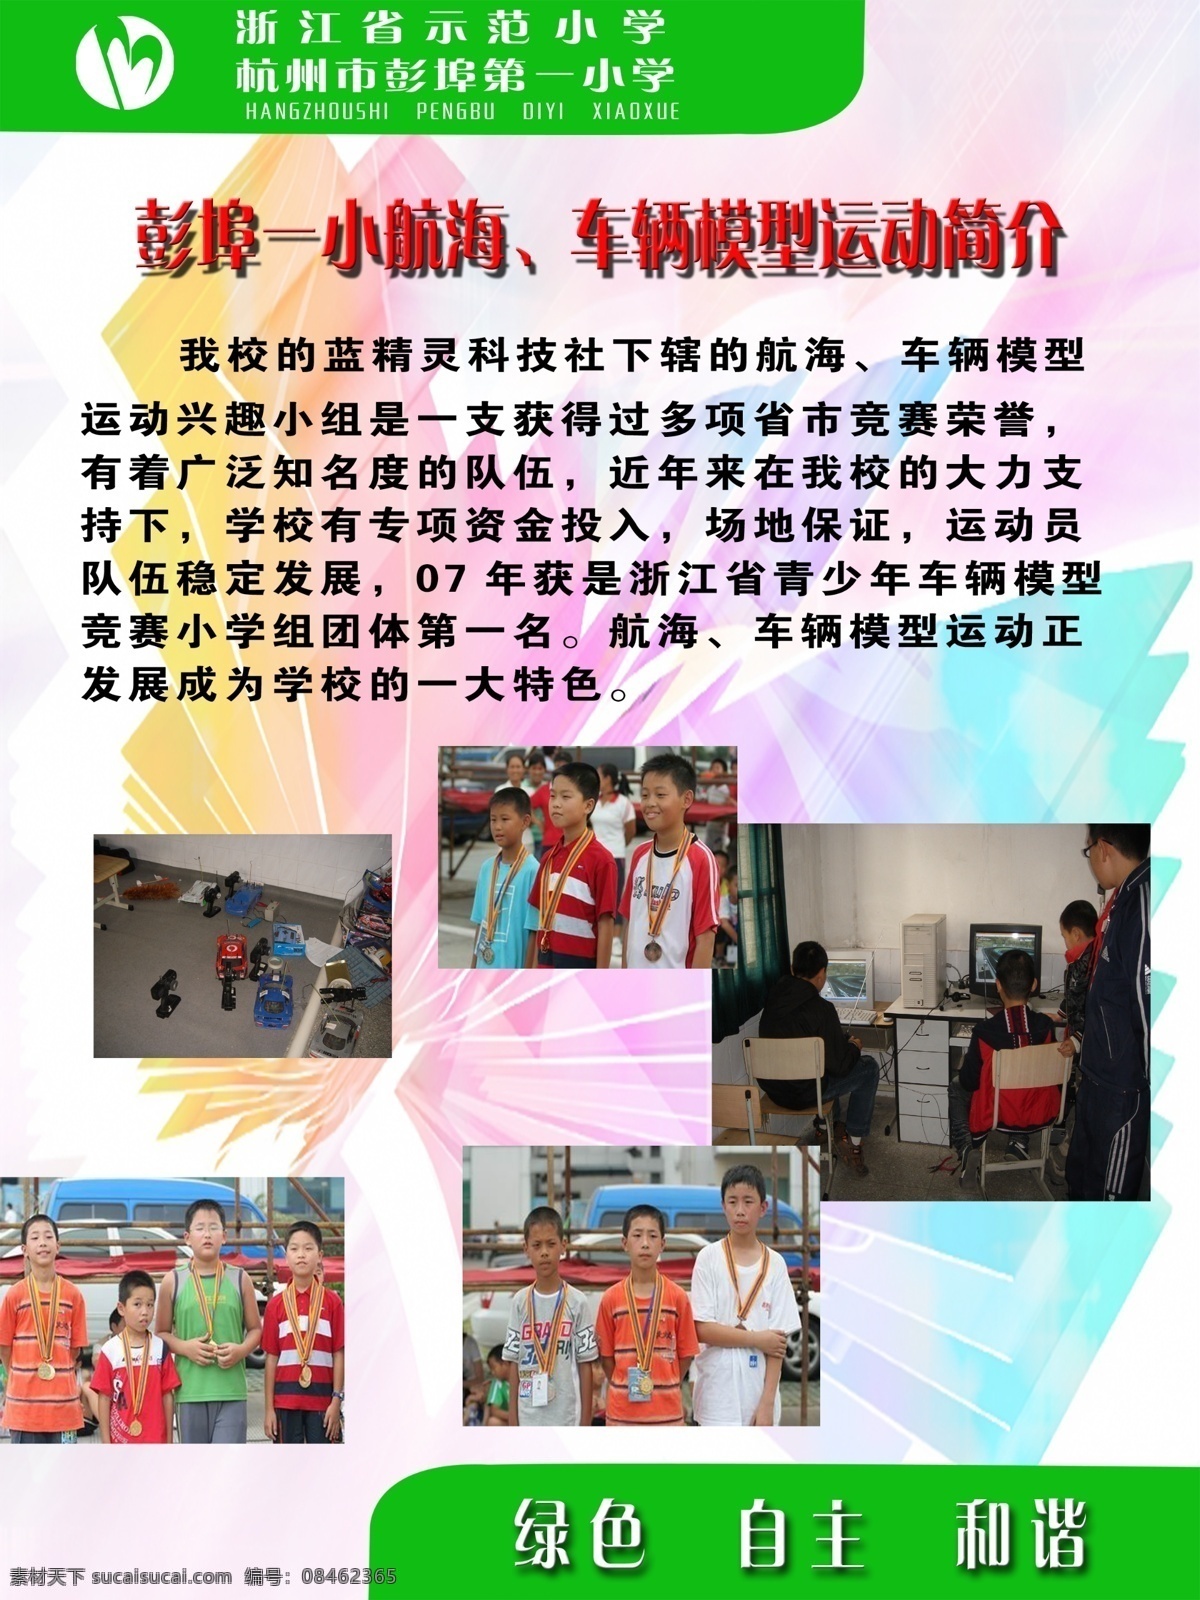 学校展板模板 杭州 小学 小学生照片 绿色 自主 和谐 广告设计模板 展板模板 源文件库